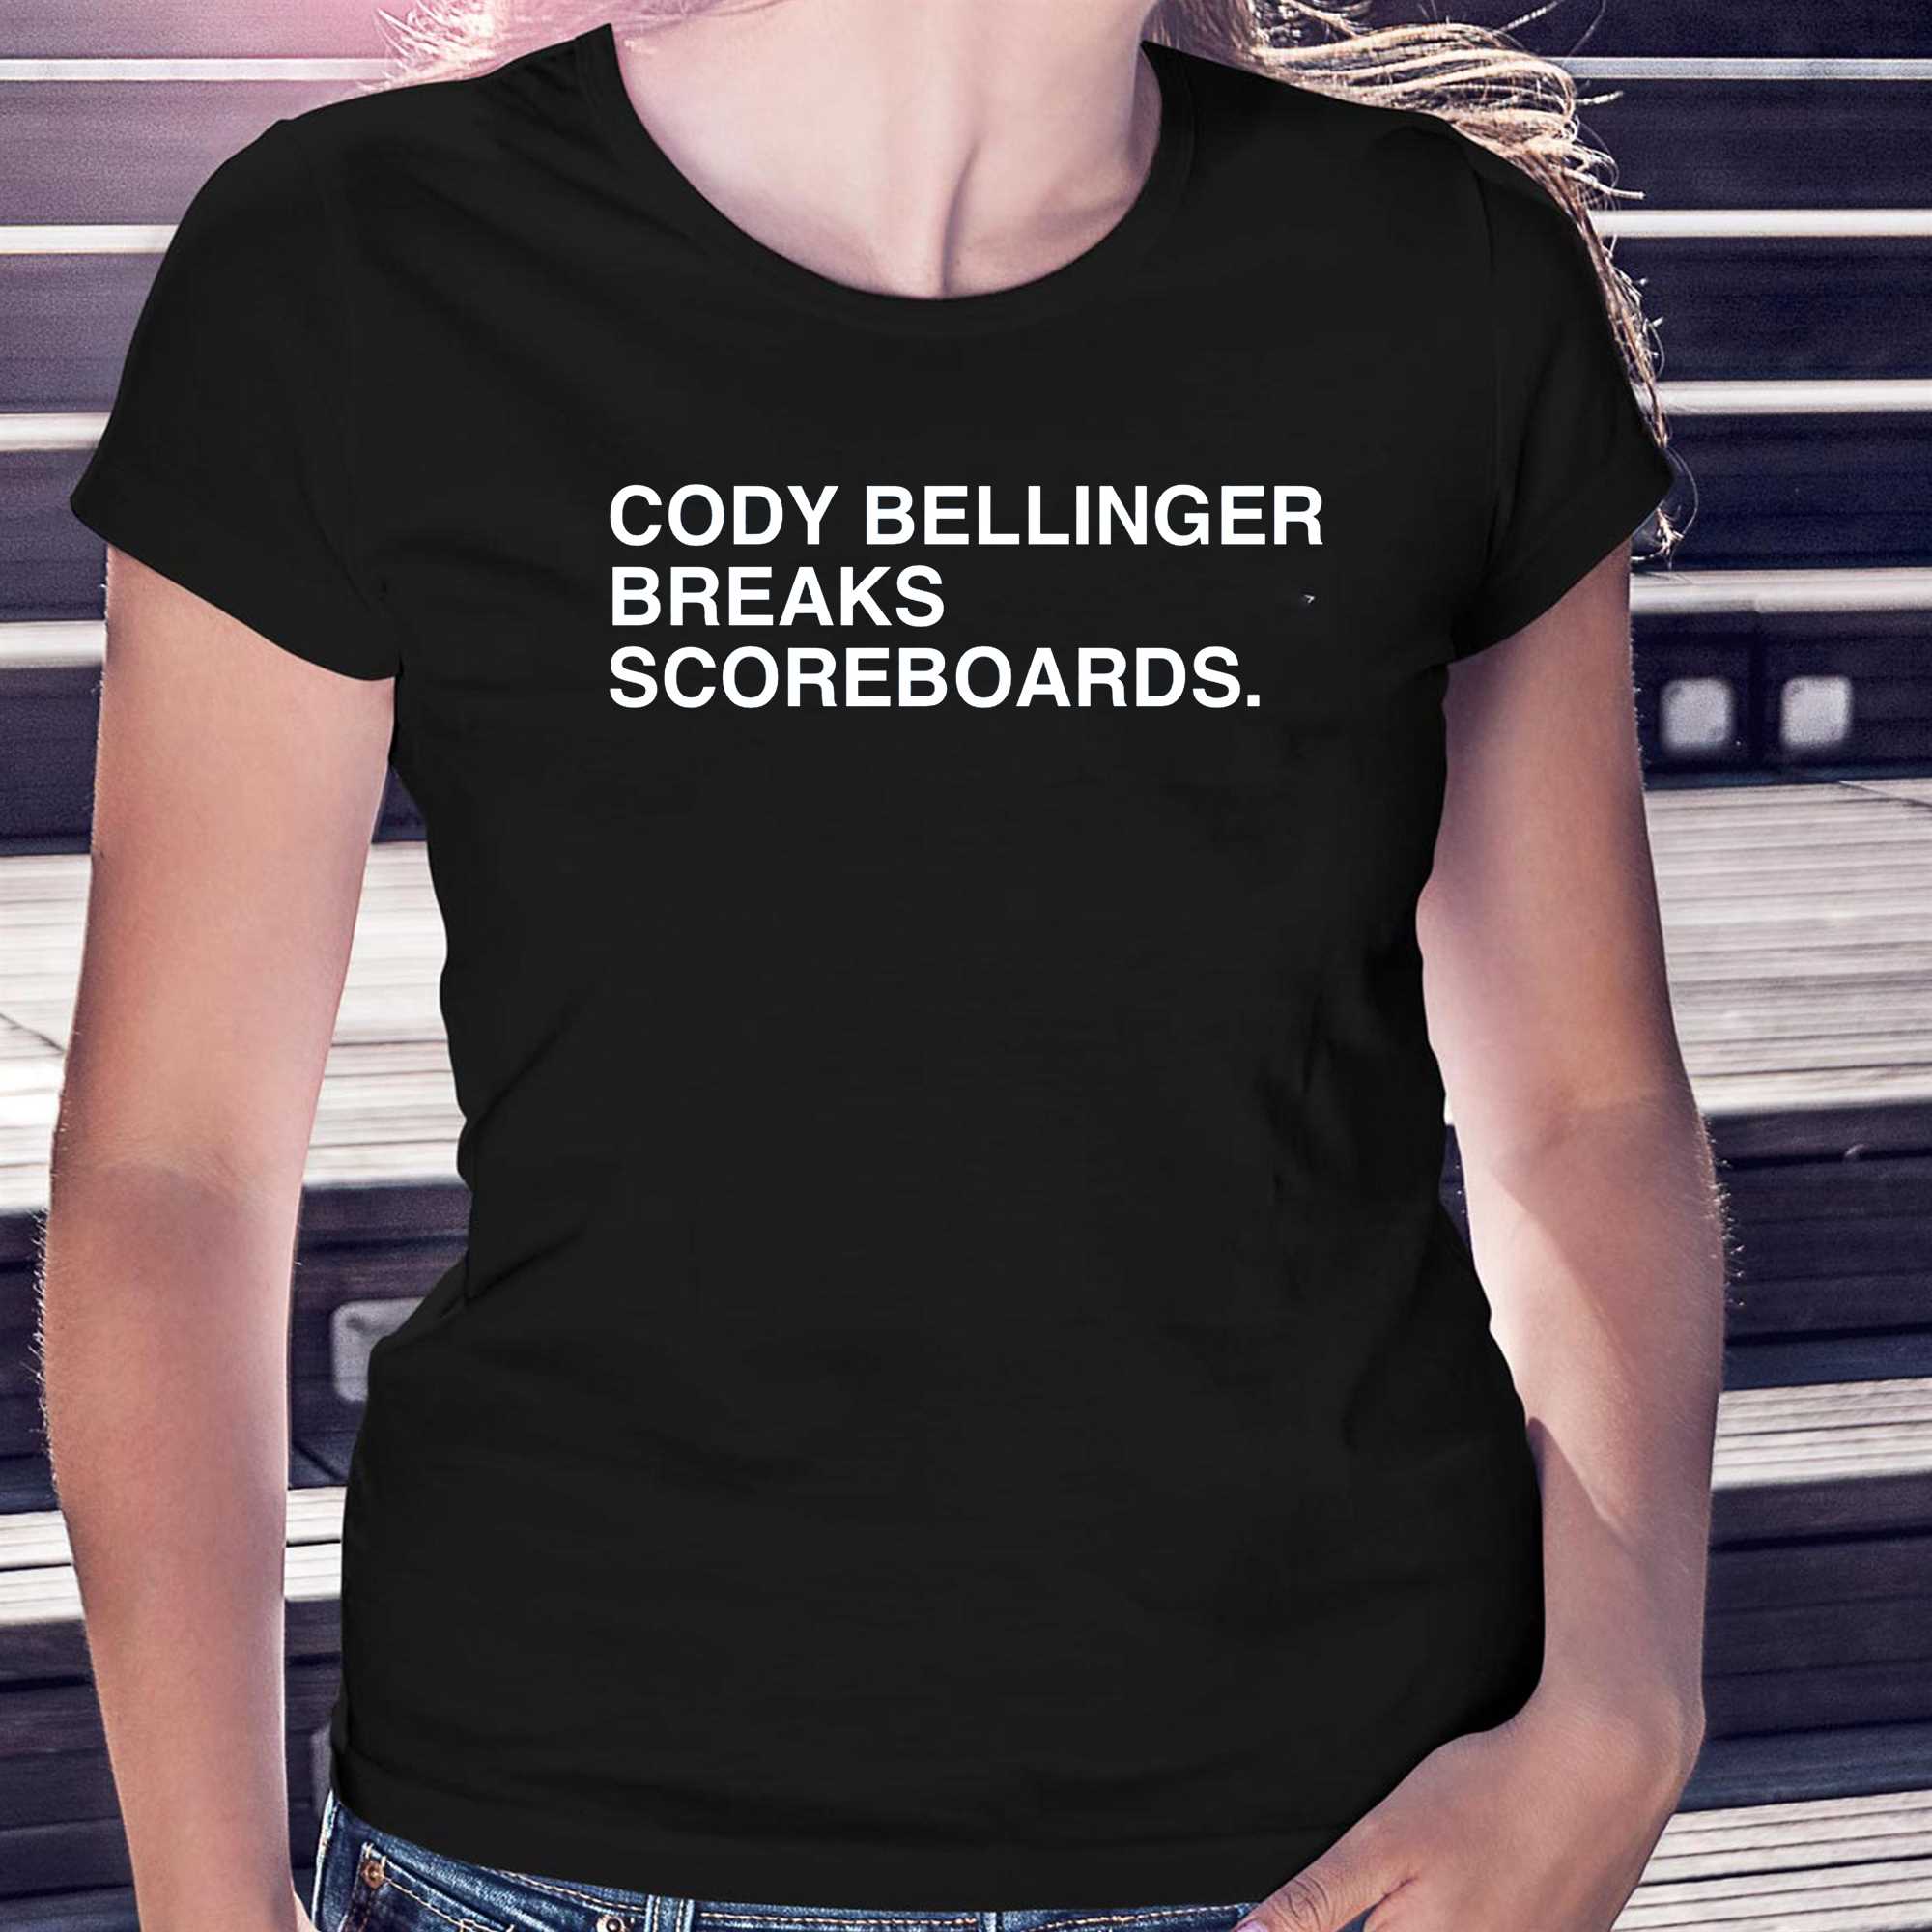 Funny cody bellinger breaks scoreboards shirt, hoodie, sweater